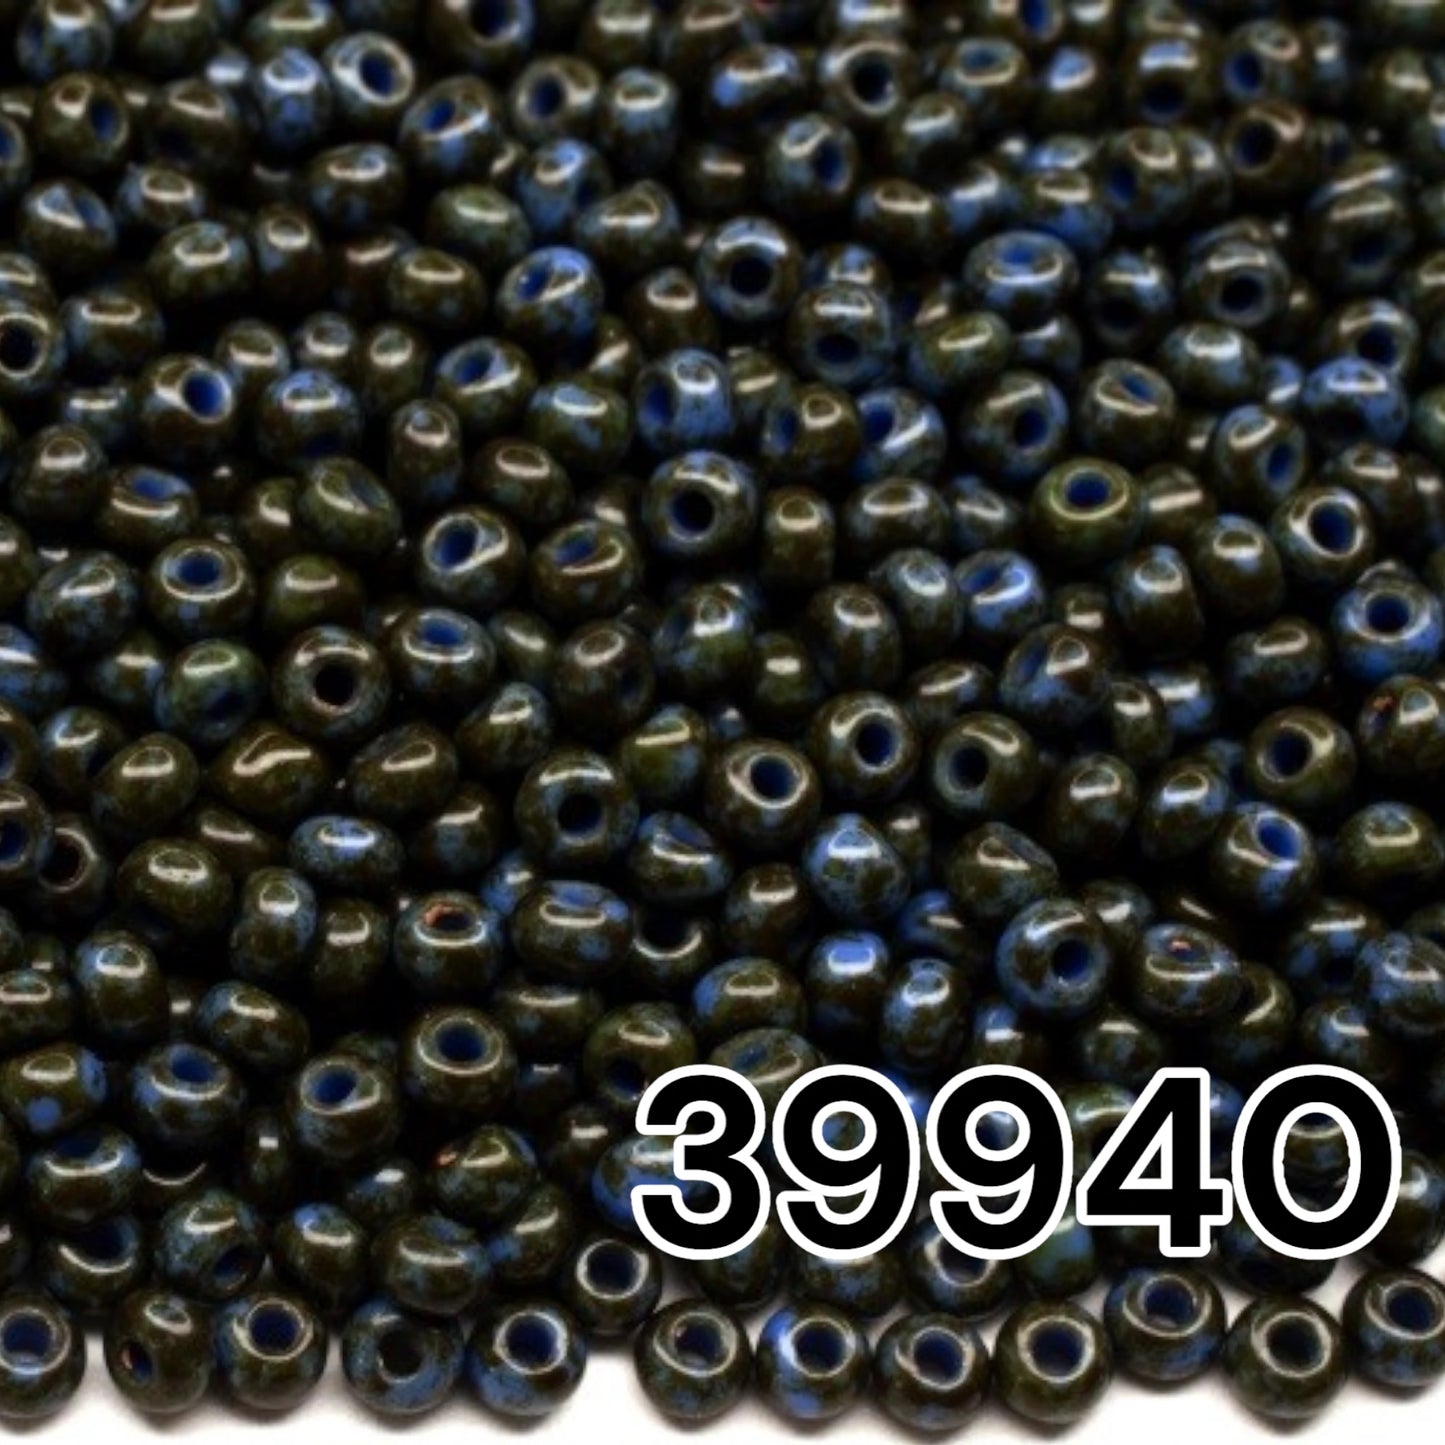 39940 Perles de rocailles tchèques PRECIOSA rondes 10/0 Travertin Bleu Vert.